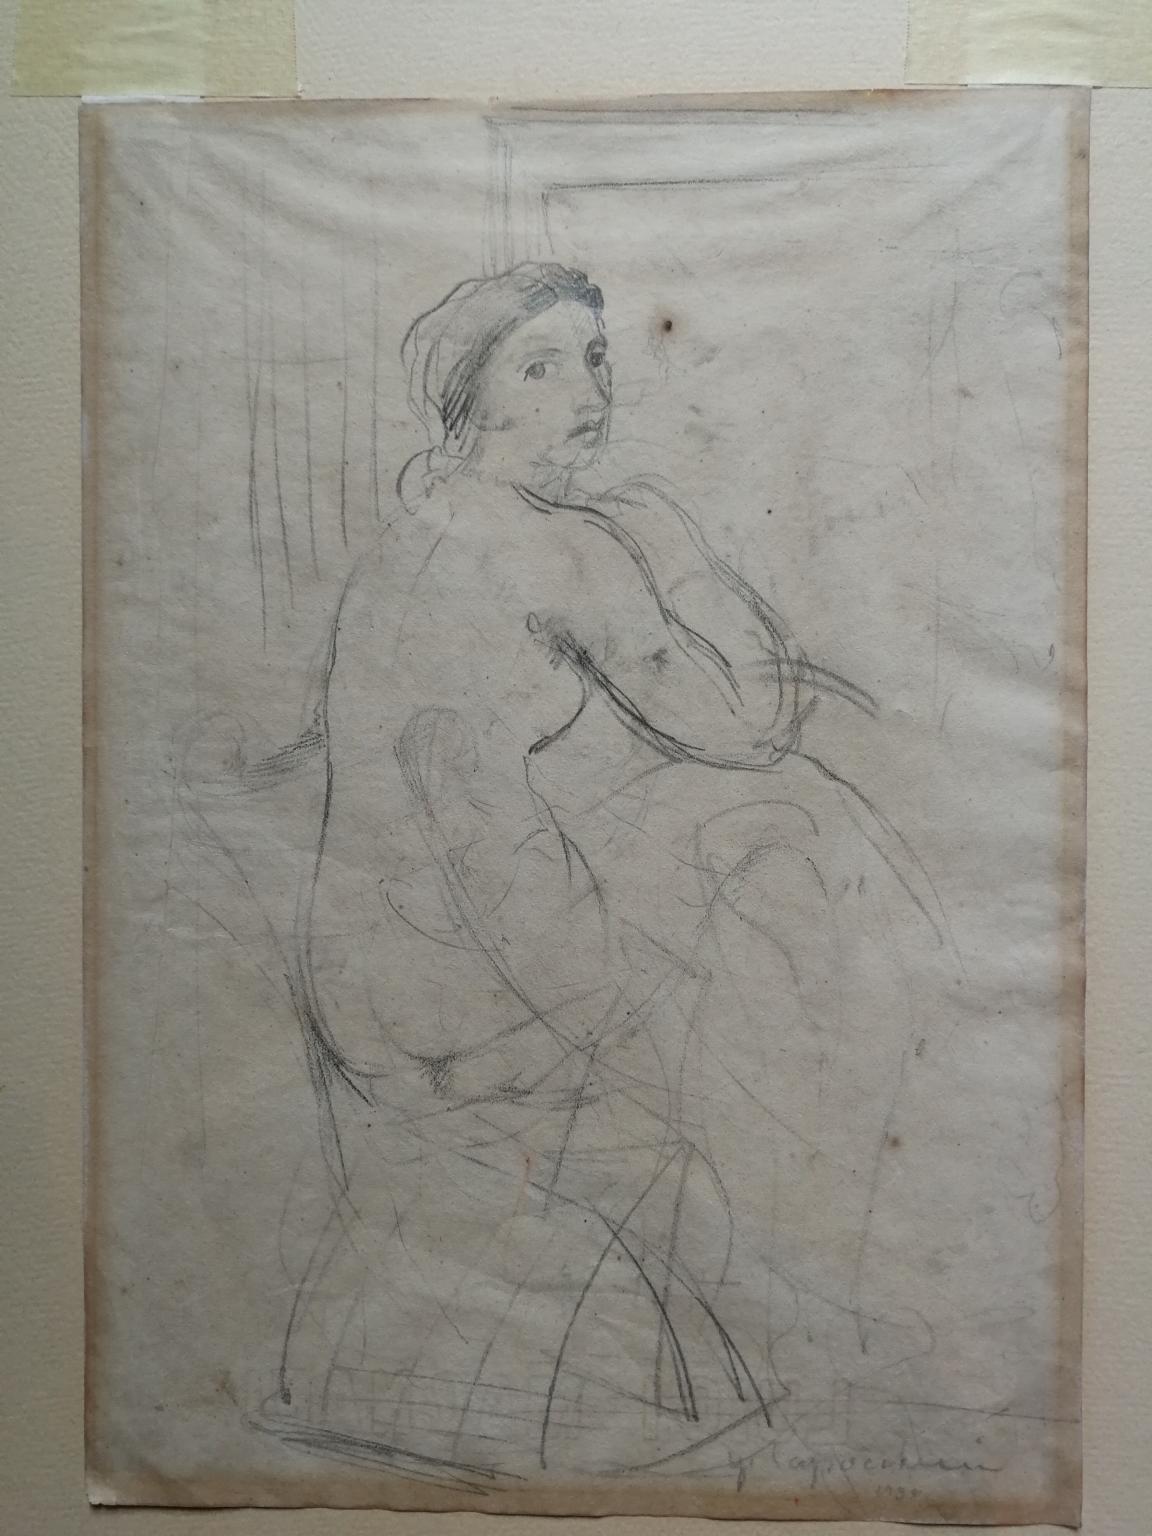 Disegno fronte retro figurativo toscano nudo femminile del XX secolo